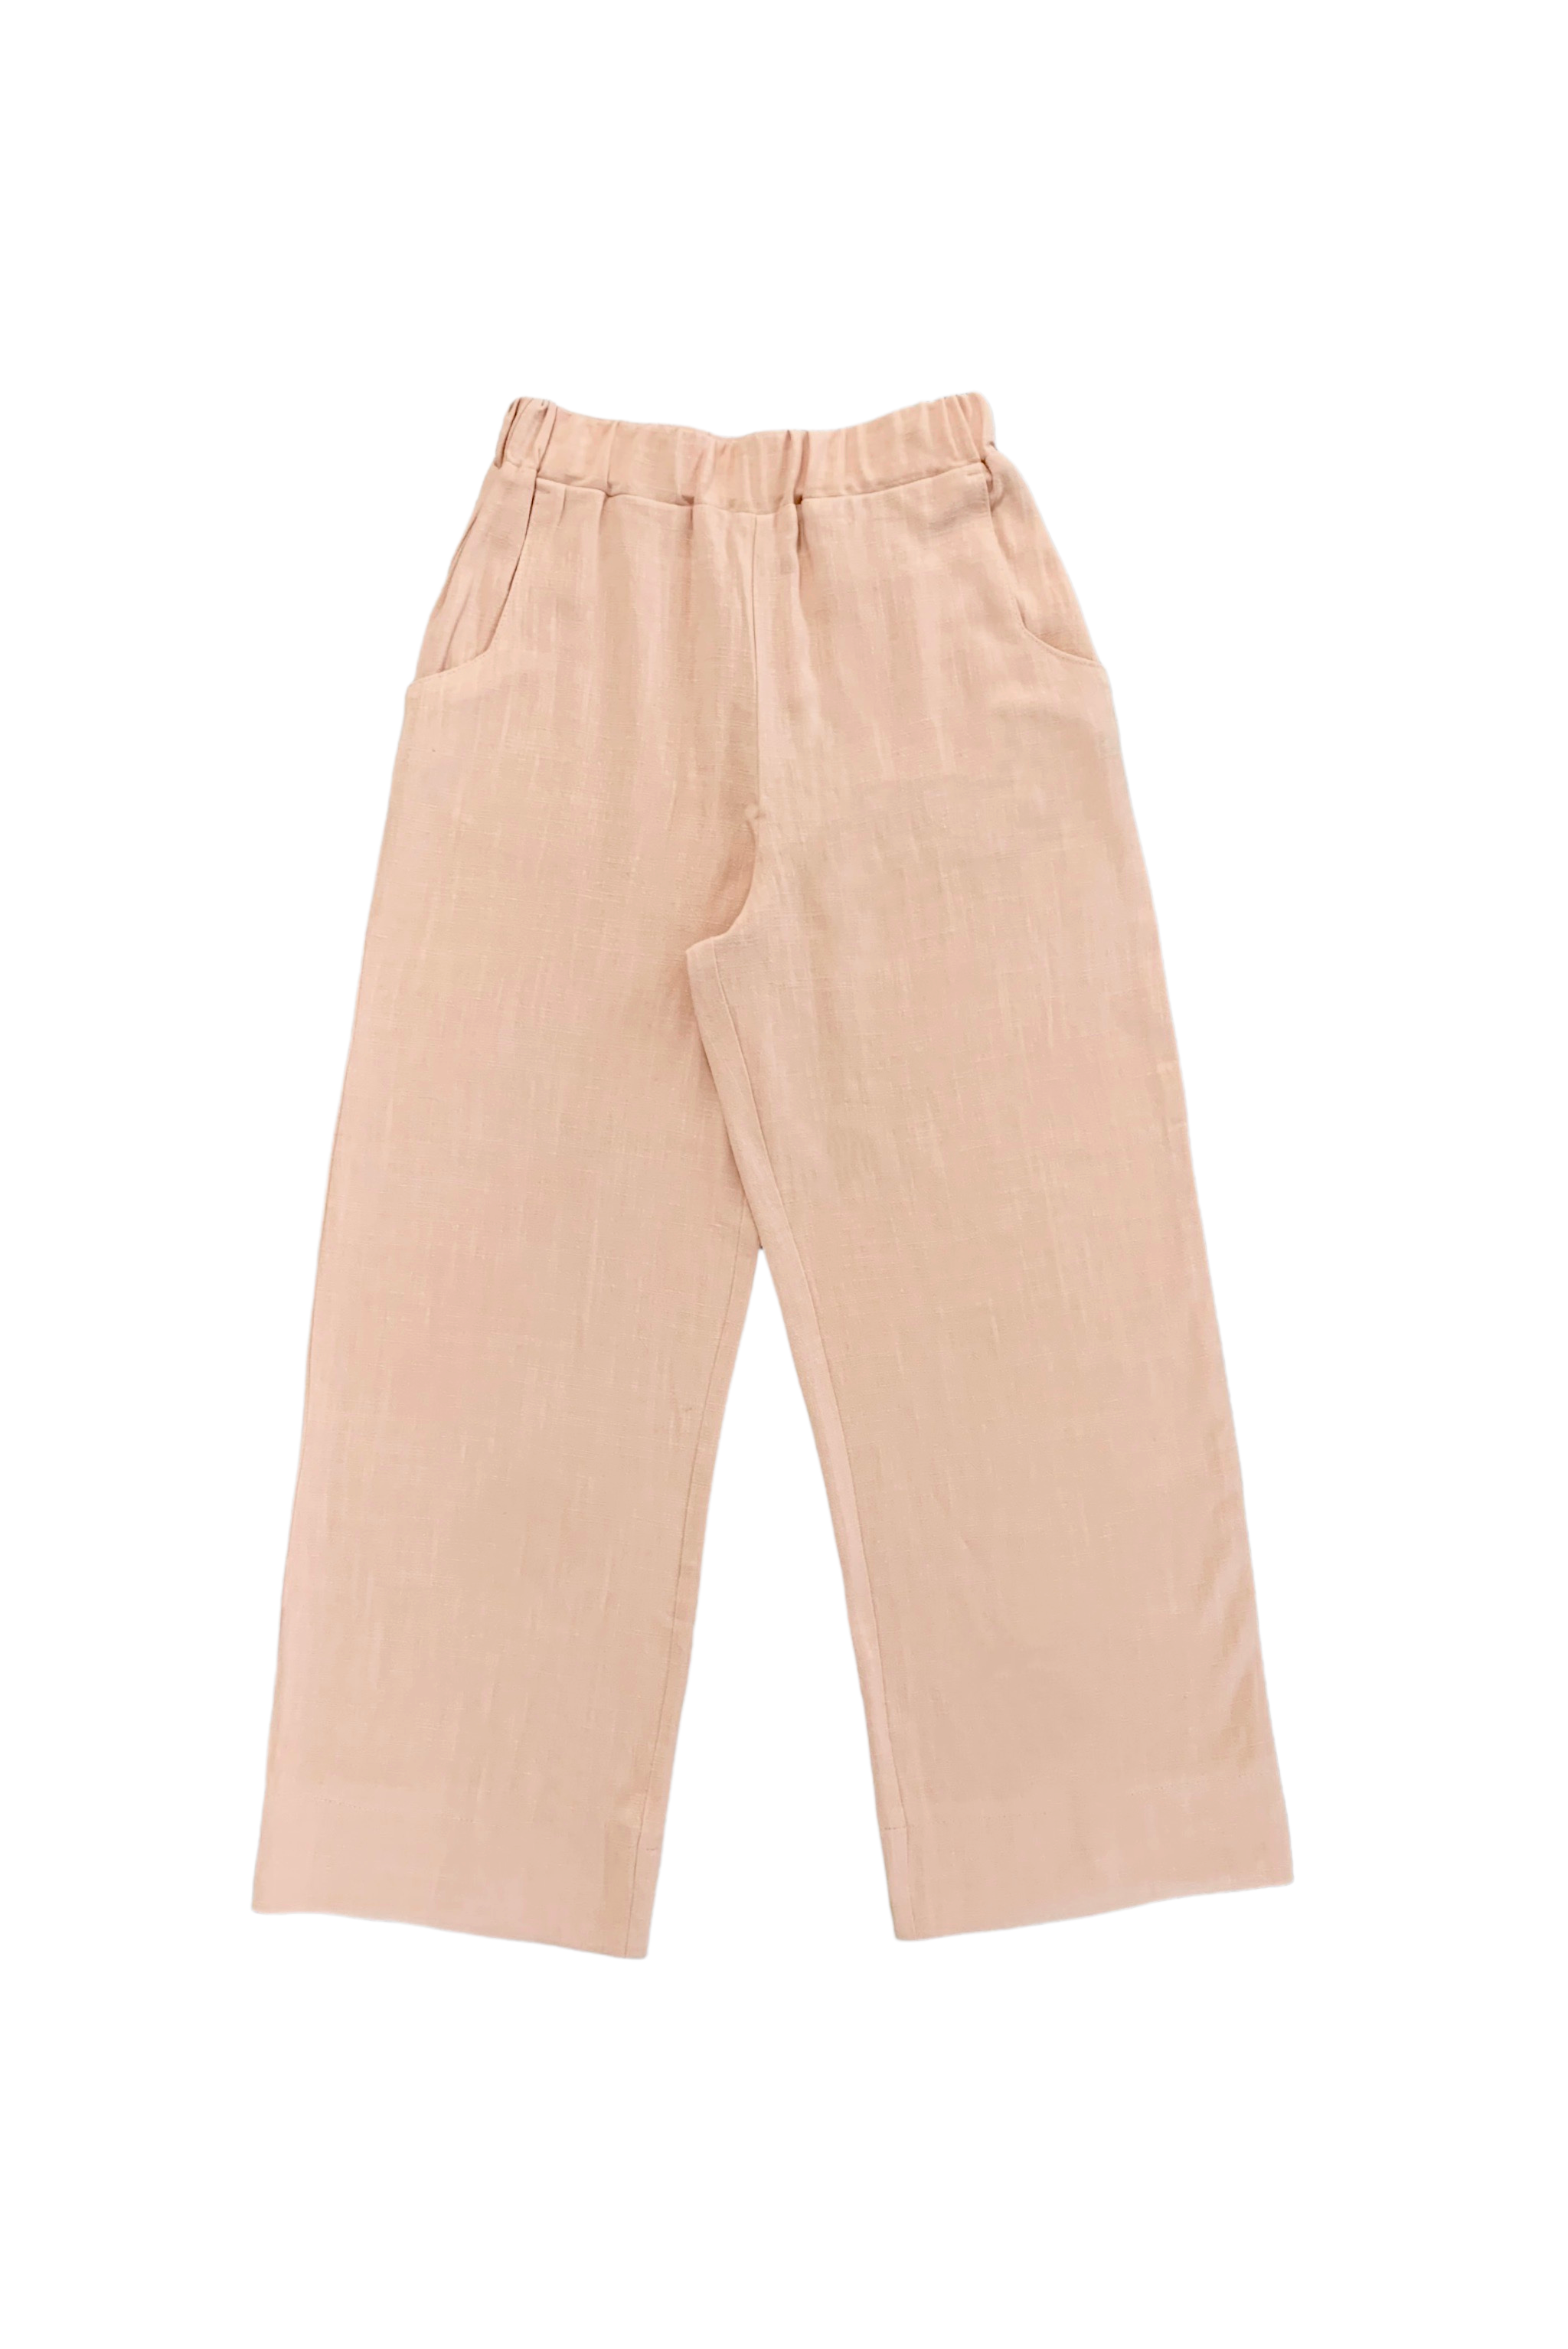 Loose linen pants - peach – VALERIE C. DESIGN